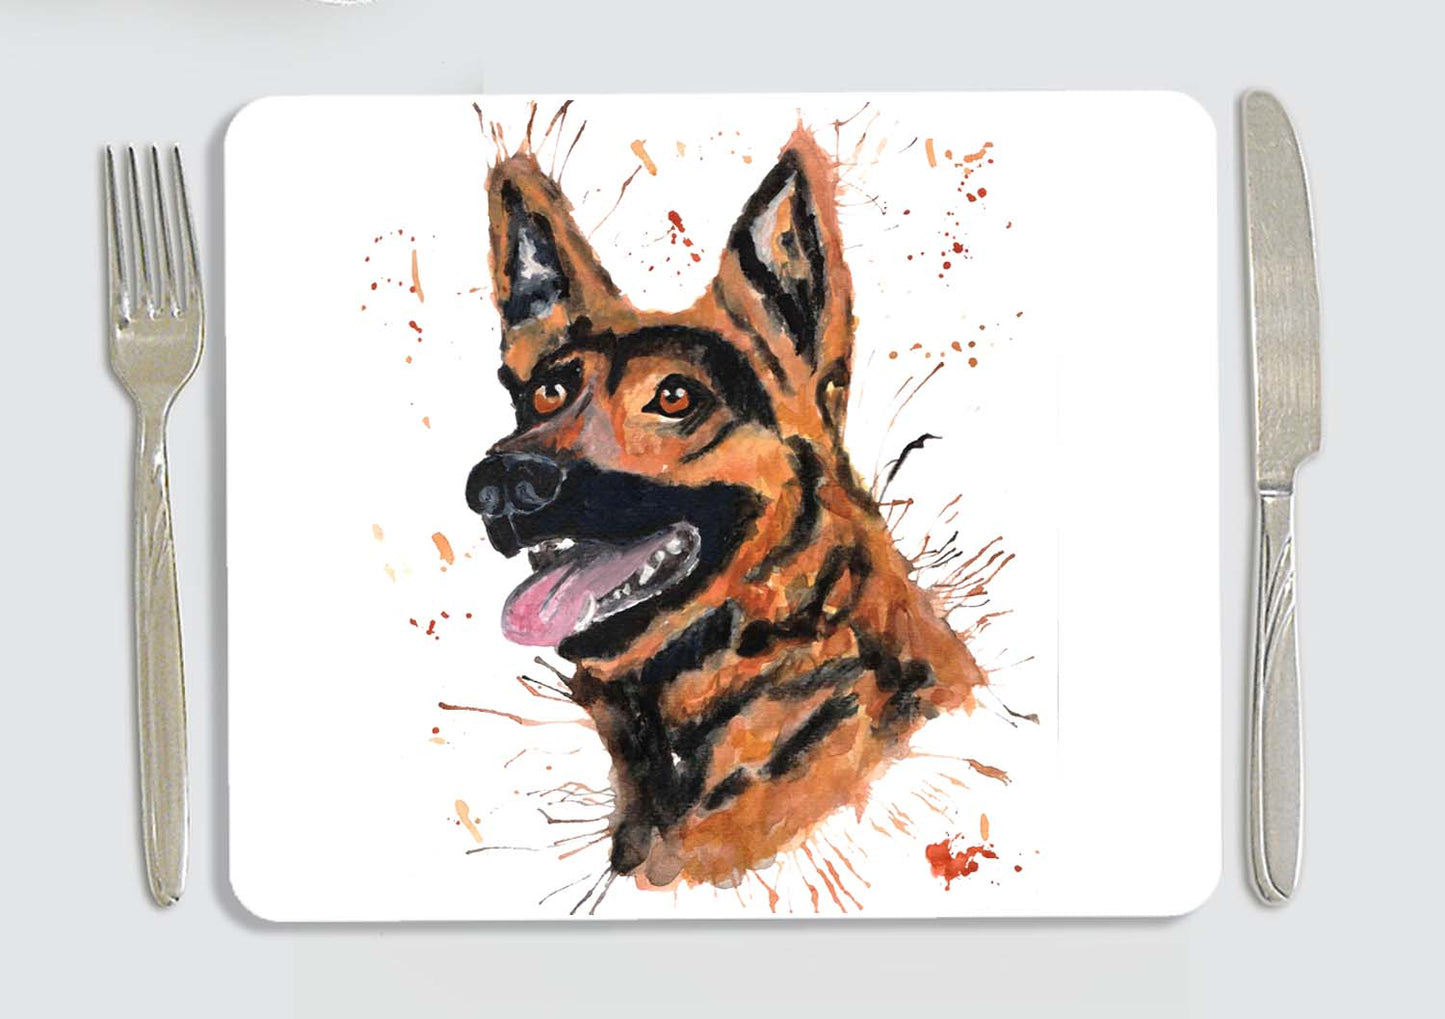 GSD - German shepherd dog placemat